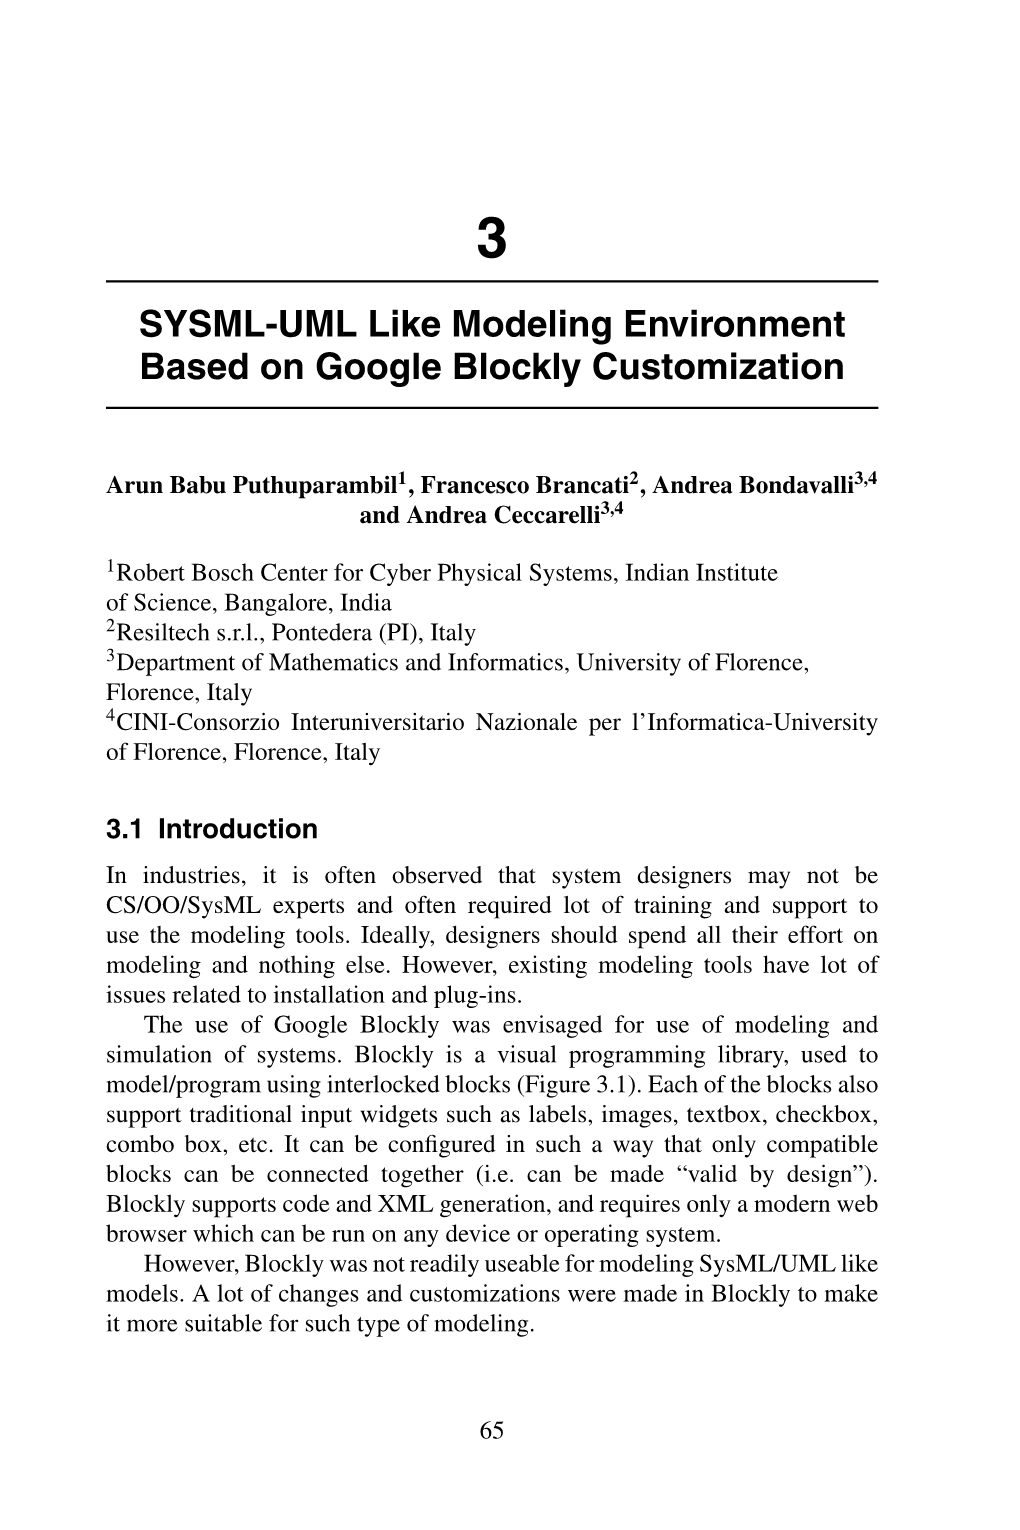 SYSML-UML Like Modeling Environment Based on Google Blockly Customization